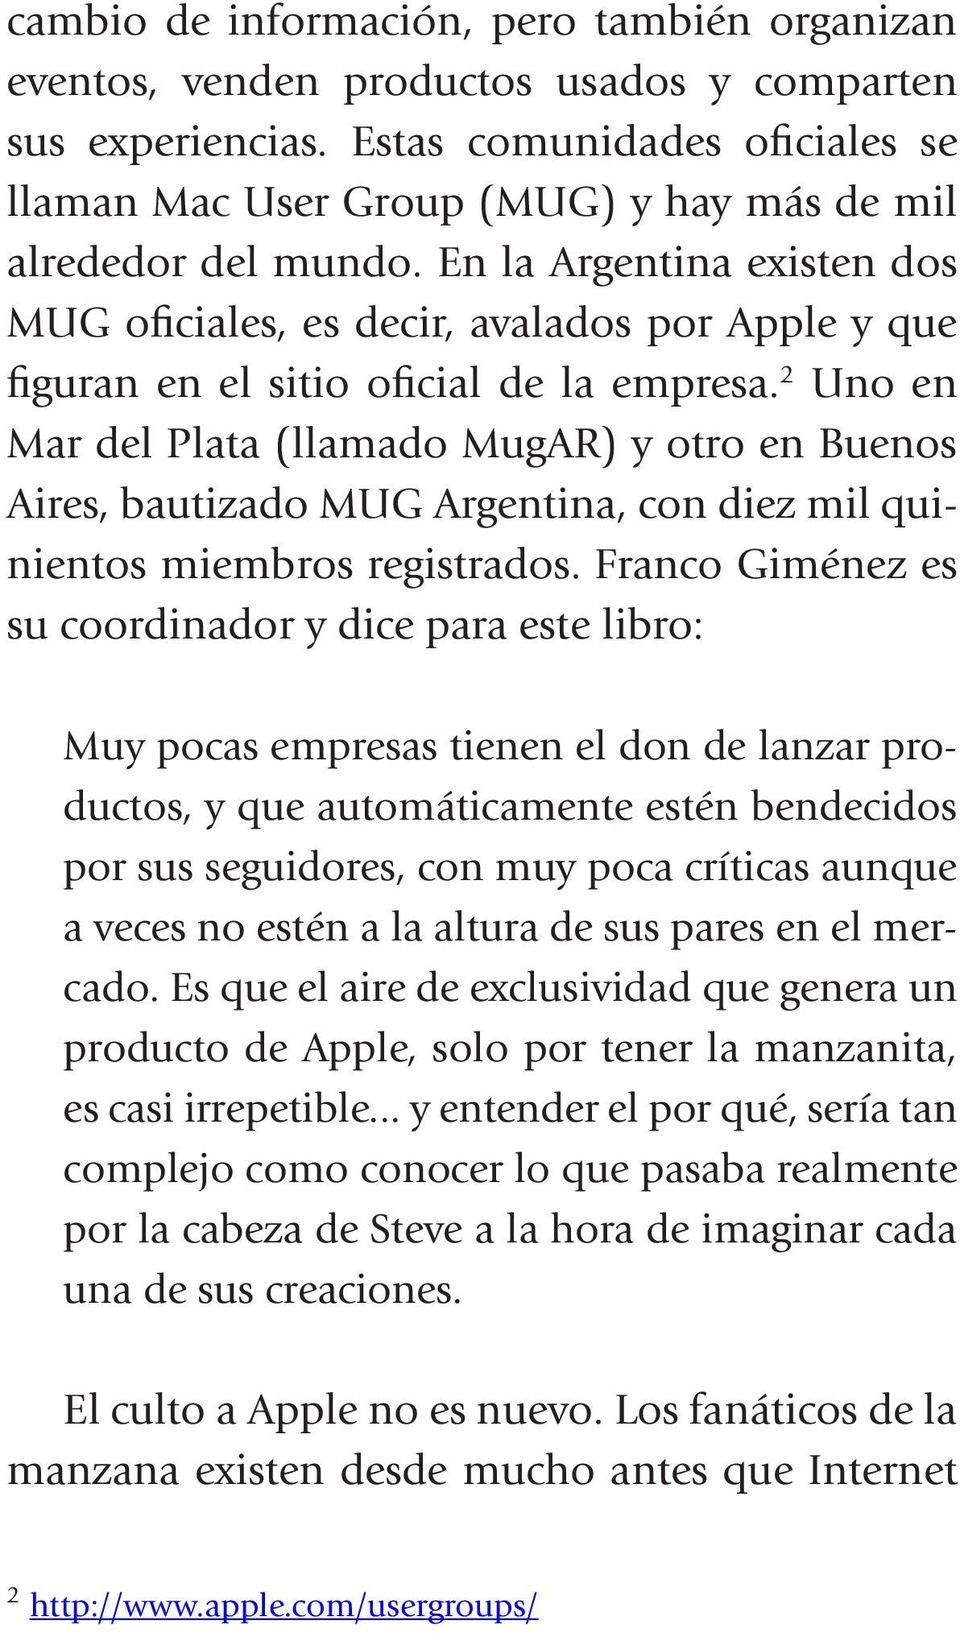 En la Argentina existen dos MUG oficiales, es decir, avalados por Apple y que figuran en el sitio oficial de la empresa.